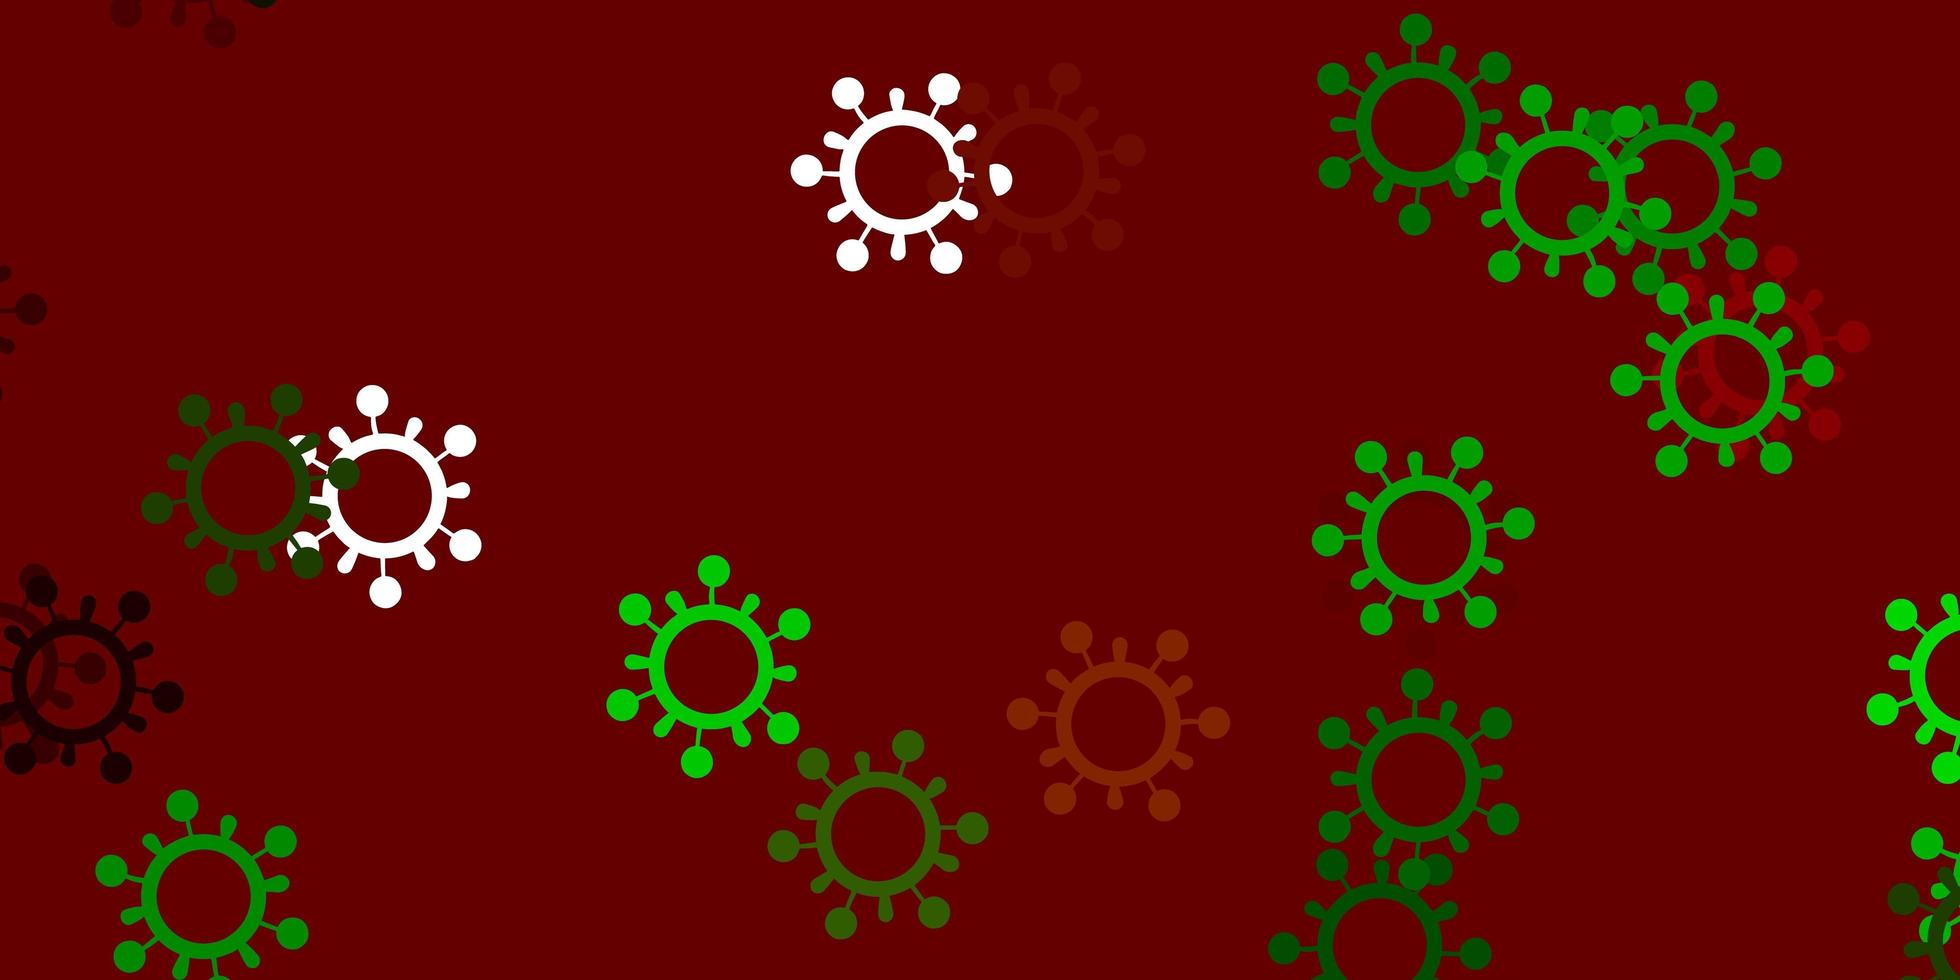 textura de vetor verde e vermelho claro com símbolos de doença.